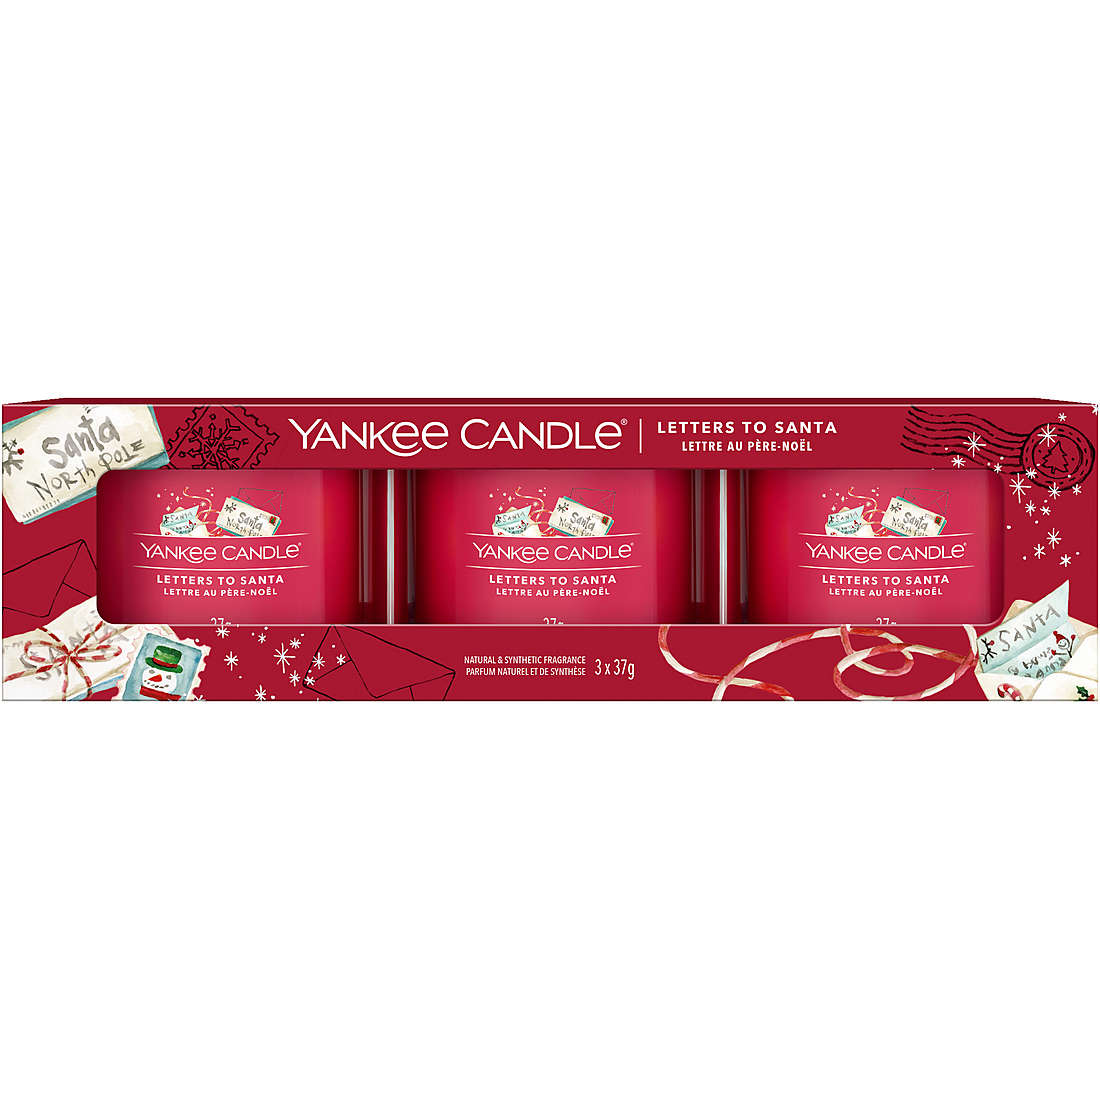 Candela Yankee Candle Box Regalo Signature colore Rosso 1701410E